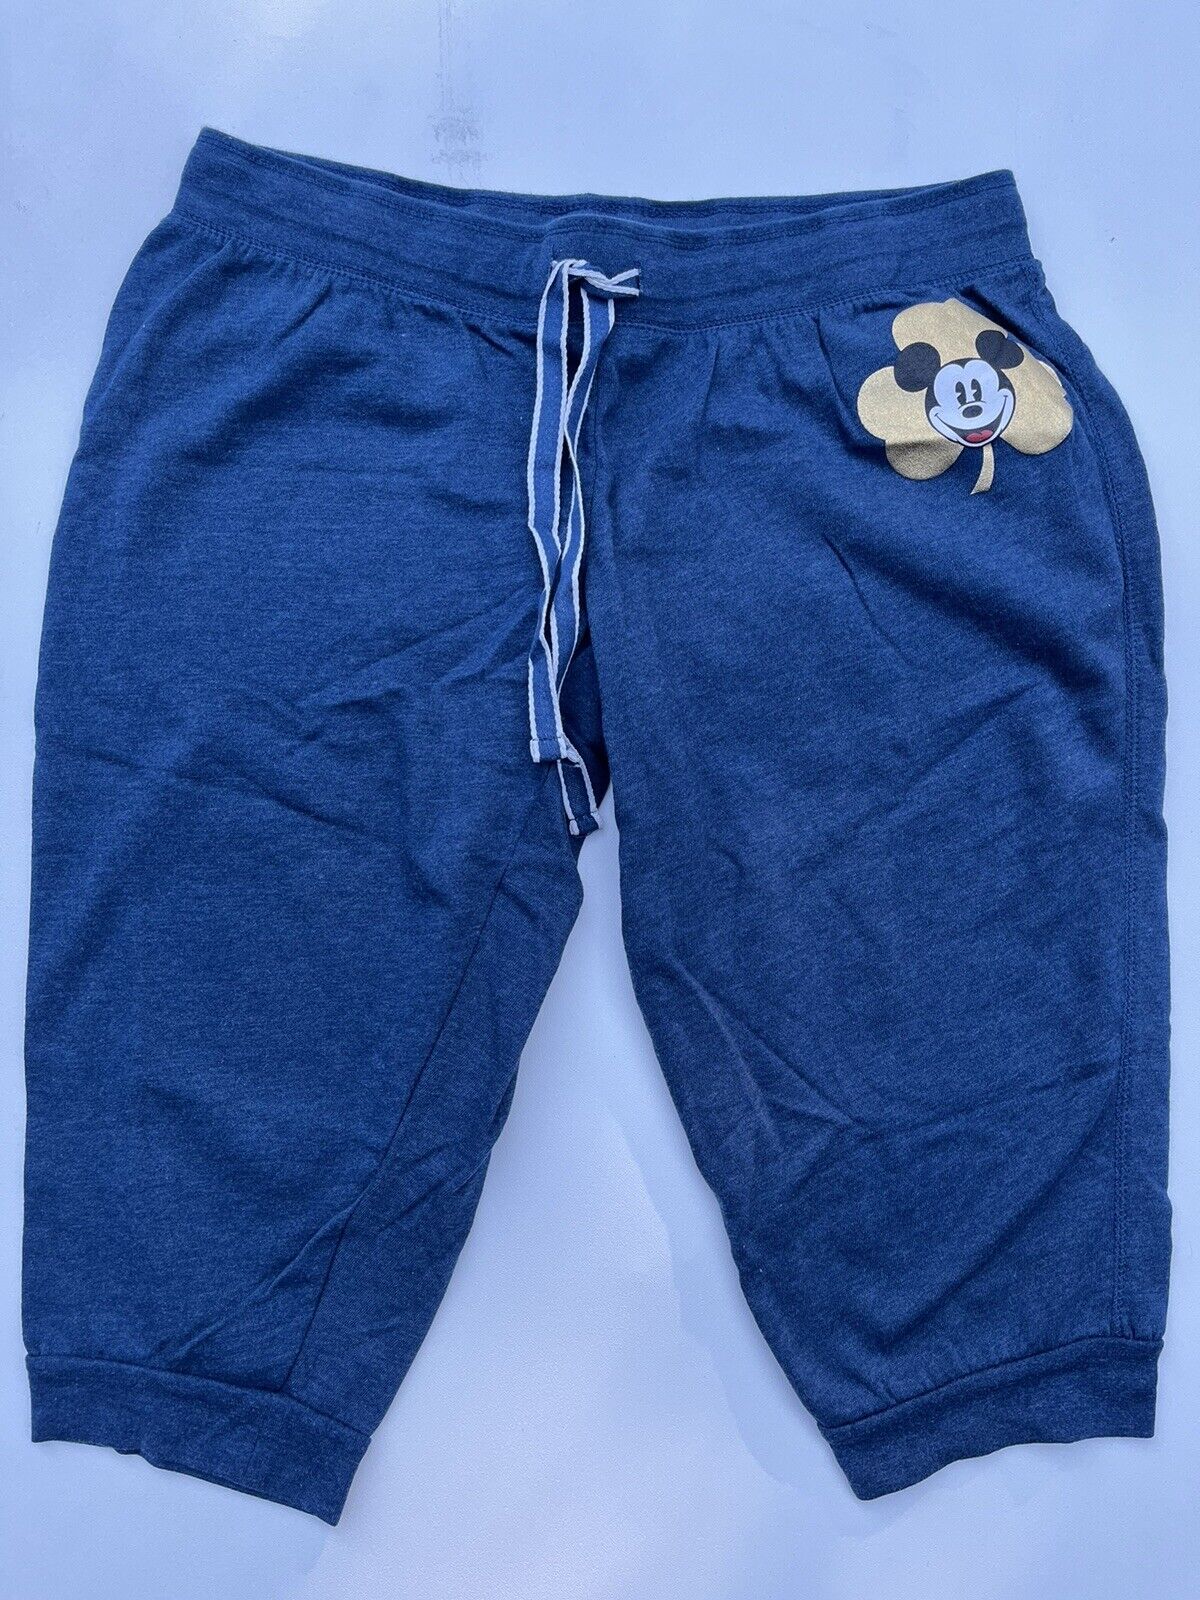 Mickey Mouse Cloverleaf Disney Capri Shorts Sweatpants Navy Blue XL